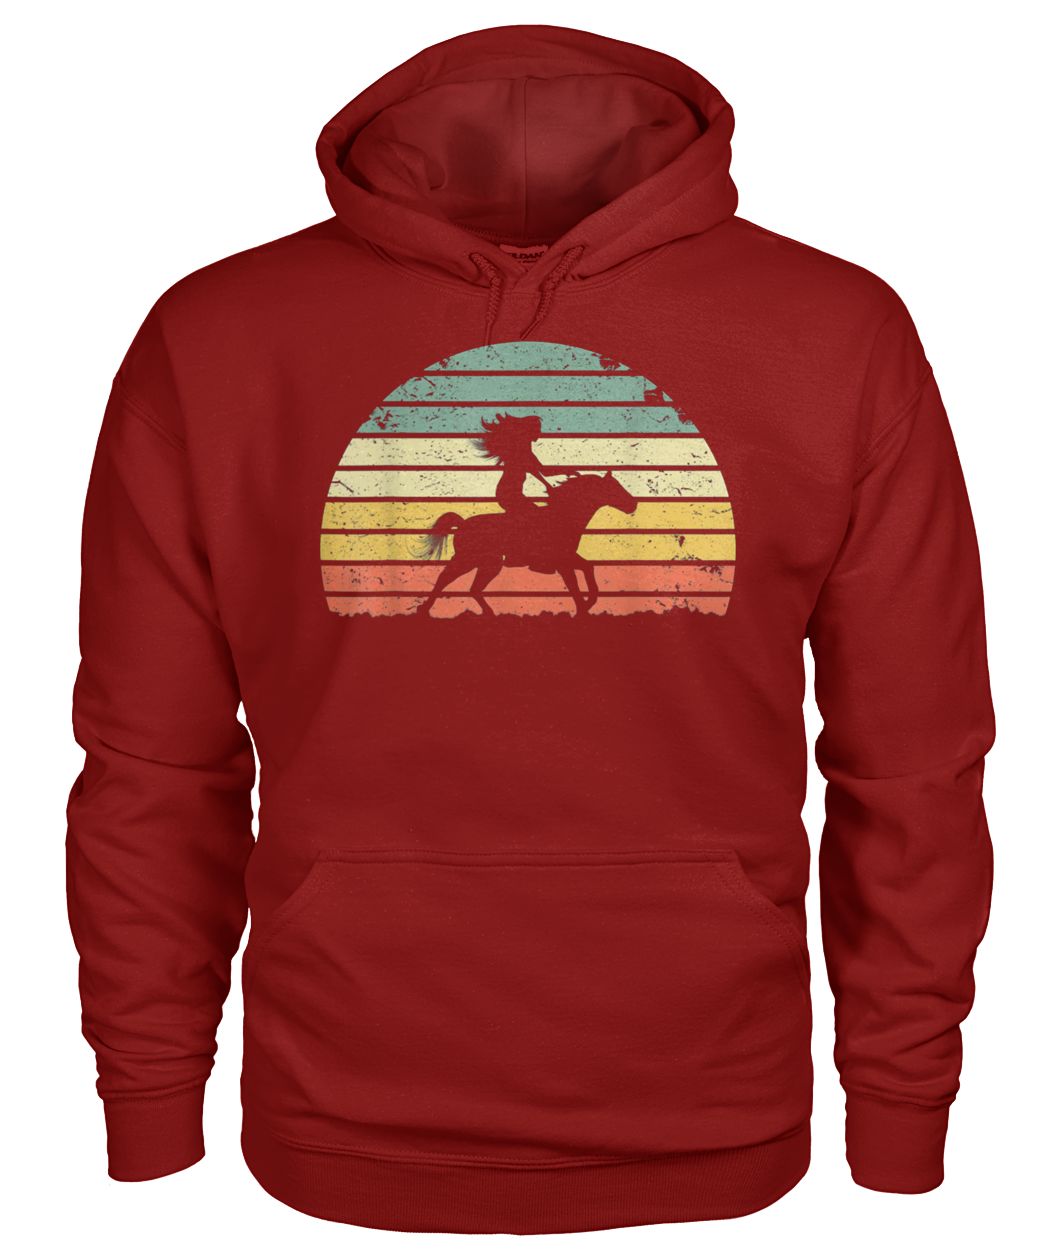 Girl horse riding vintage gildan hoodie